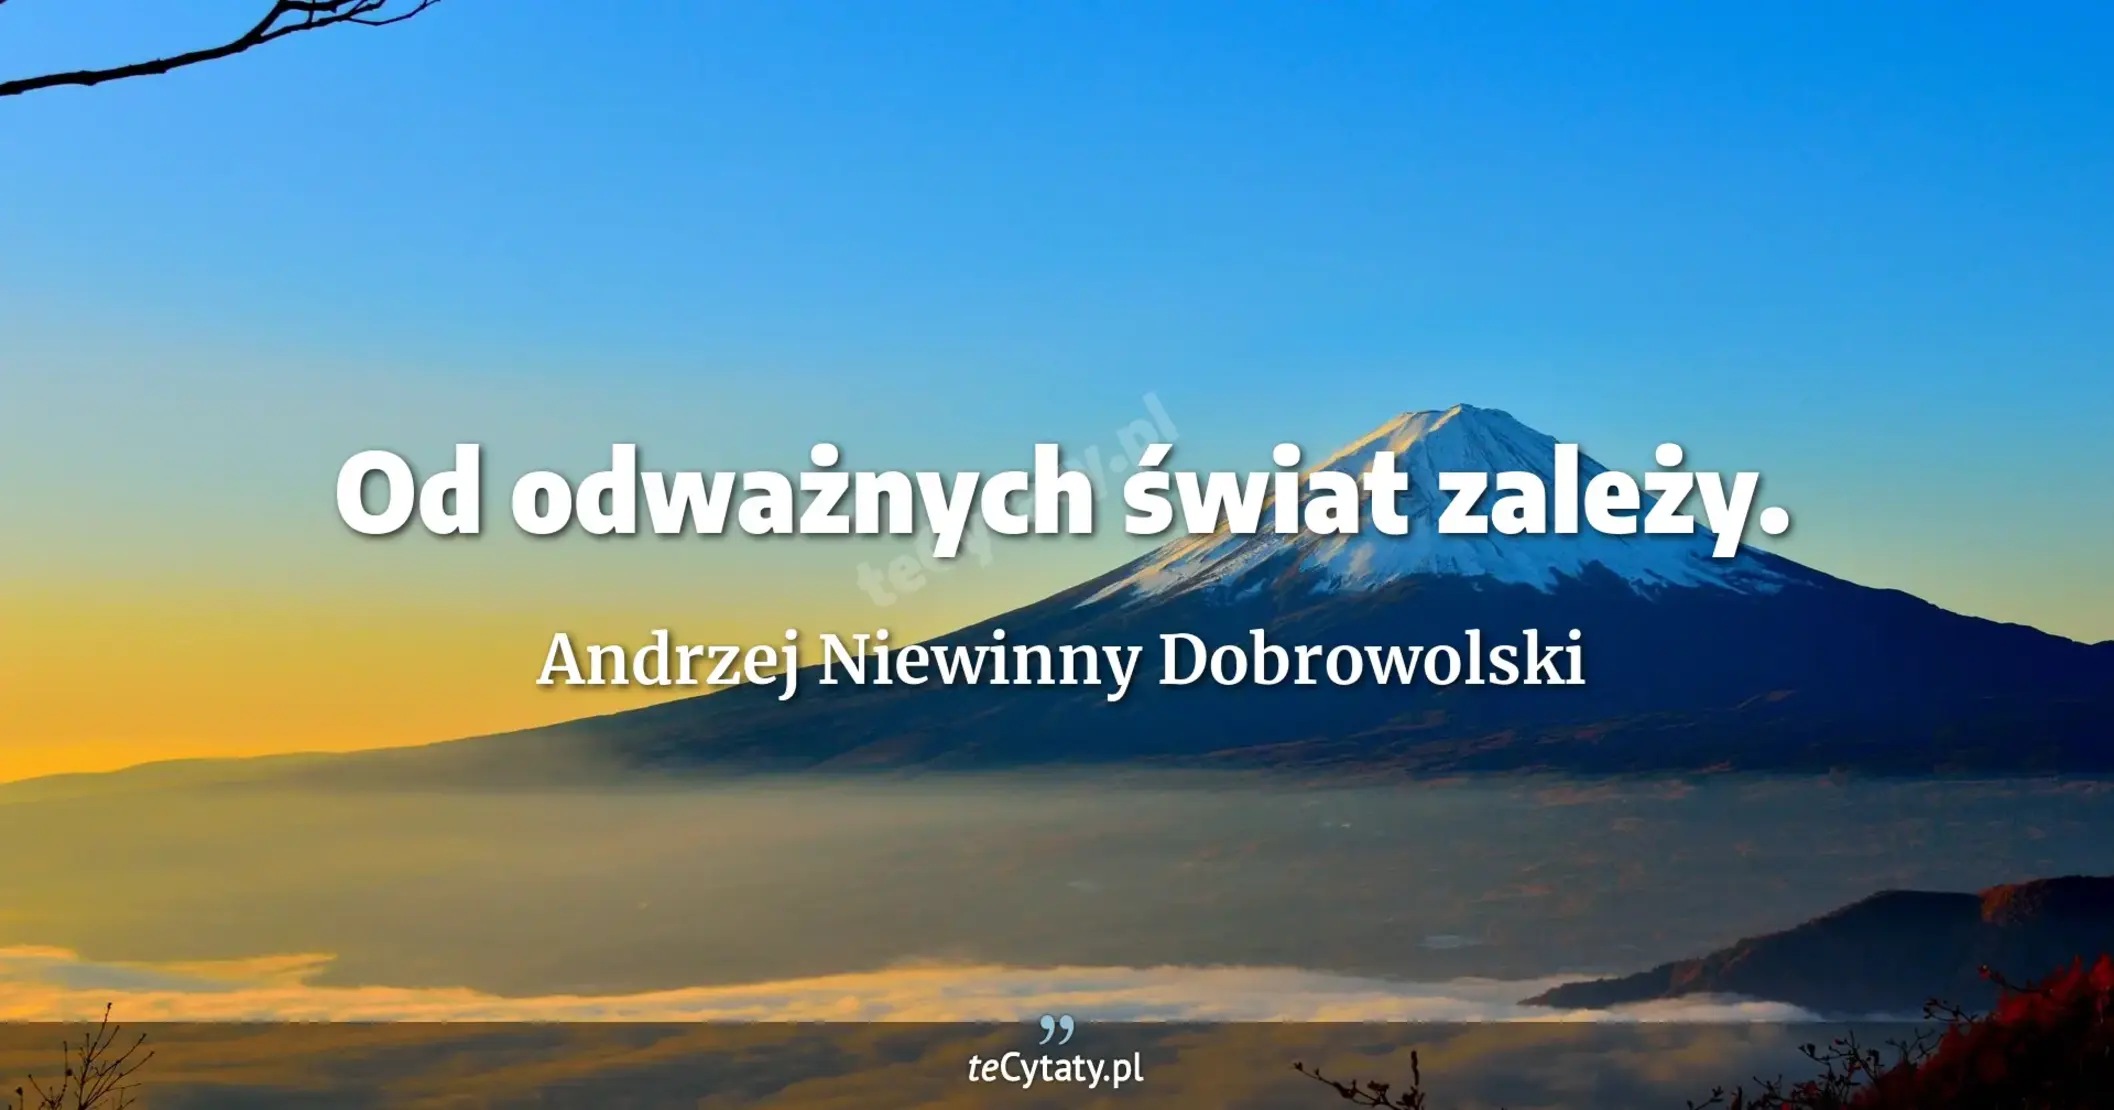 Od odważnych świat zależy. - Andrzej Niewinny Dobrowolski